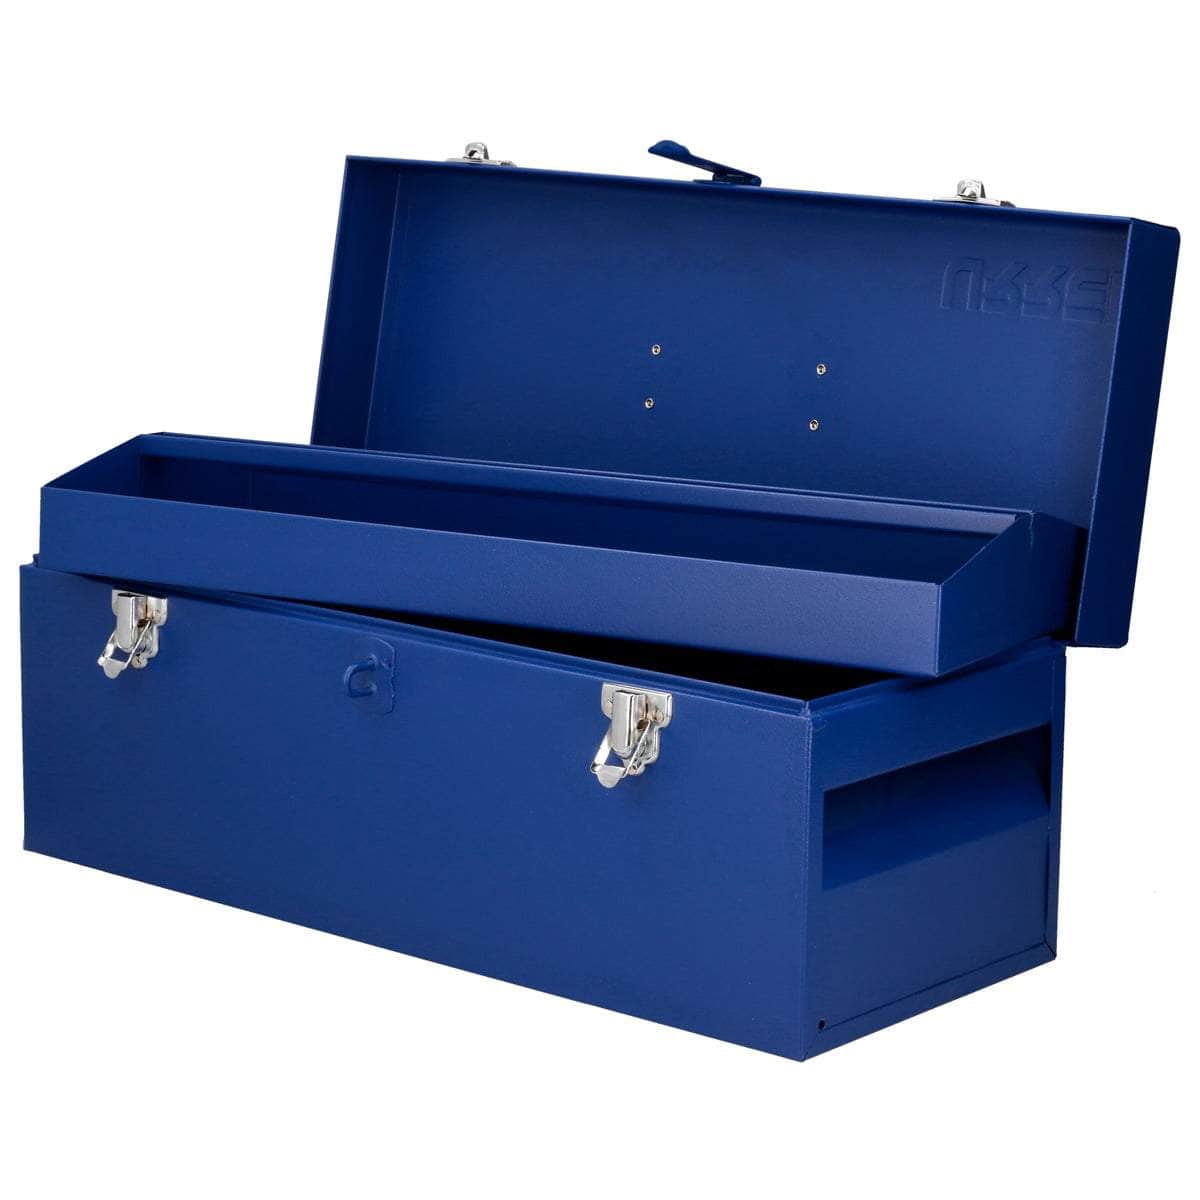 D5A Caja portaherramientas metálica azul 20" x 7" x 7", cod.D5A Urrea Urrea